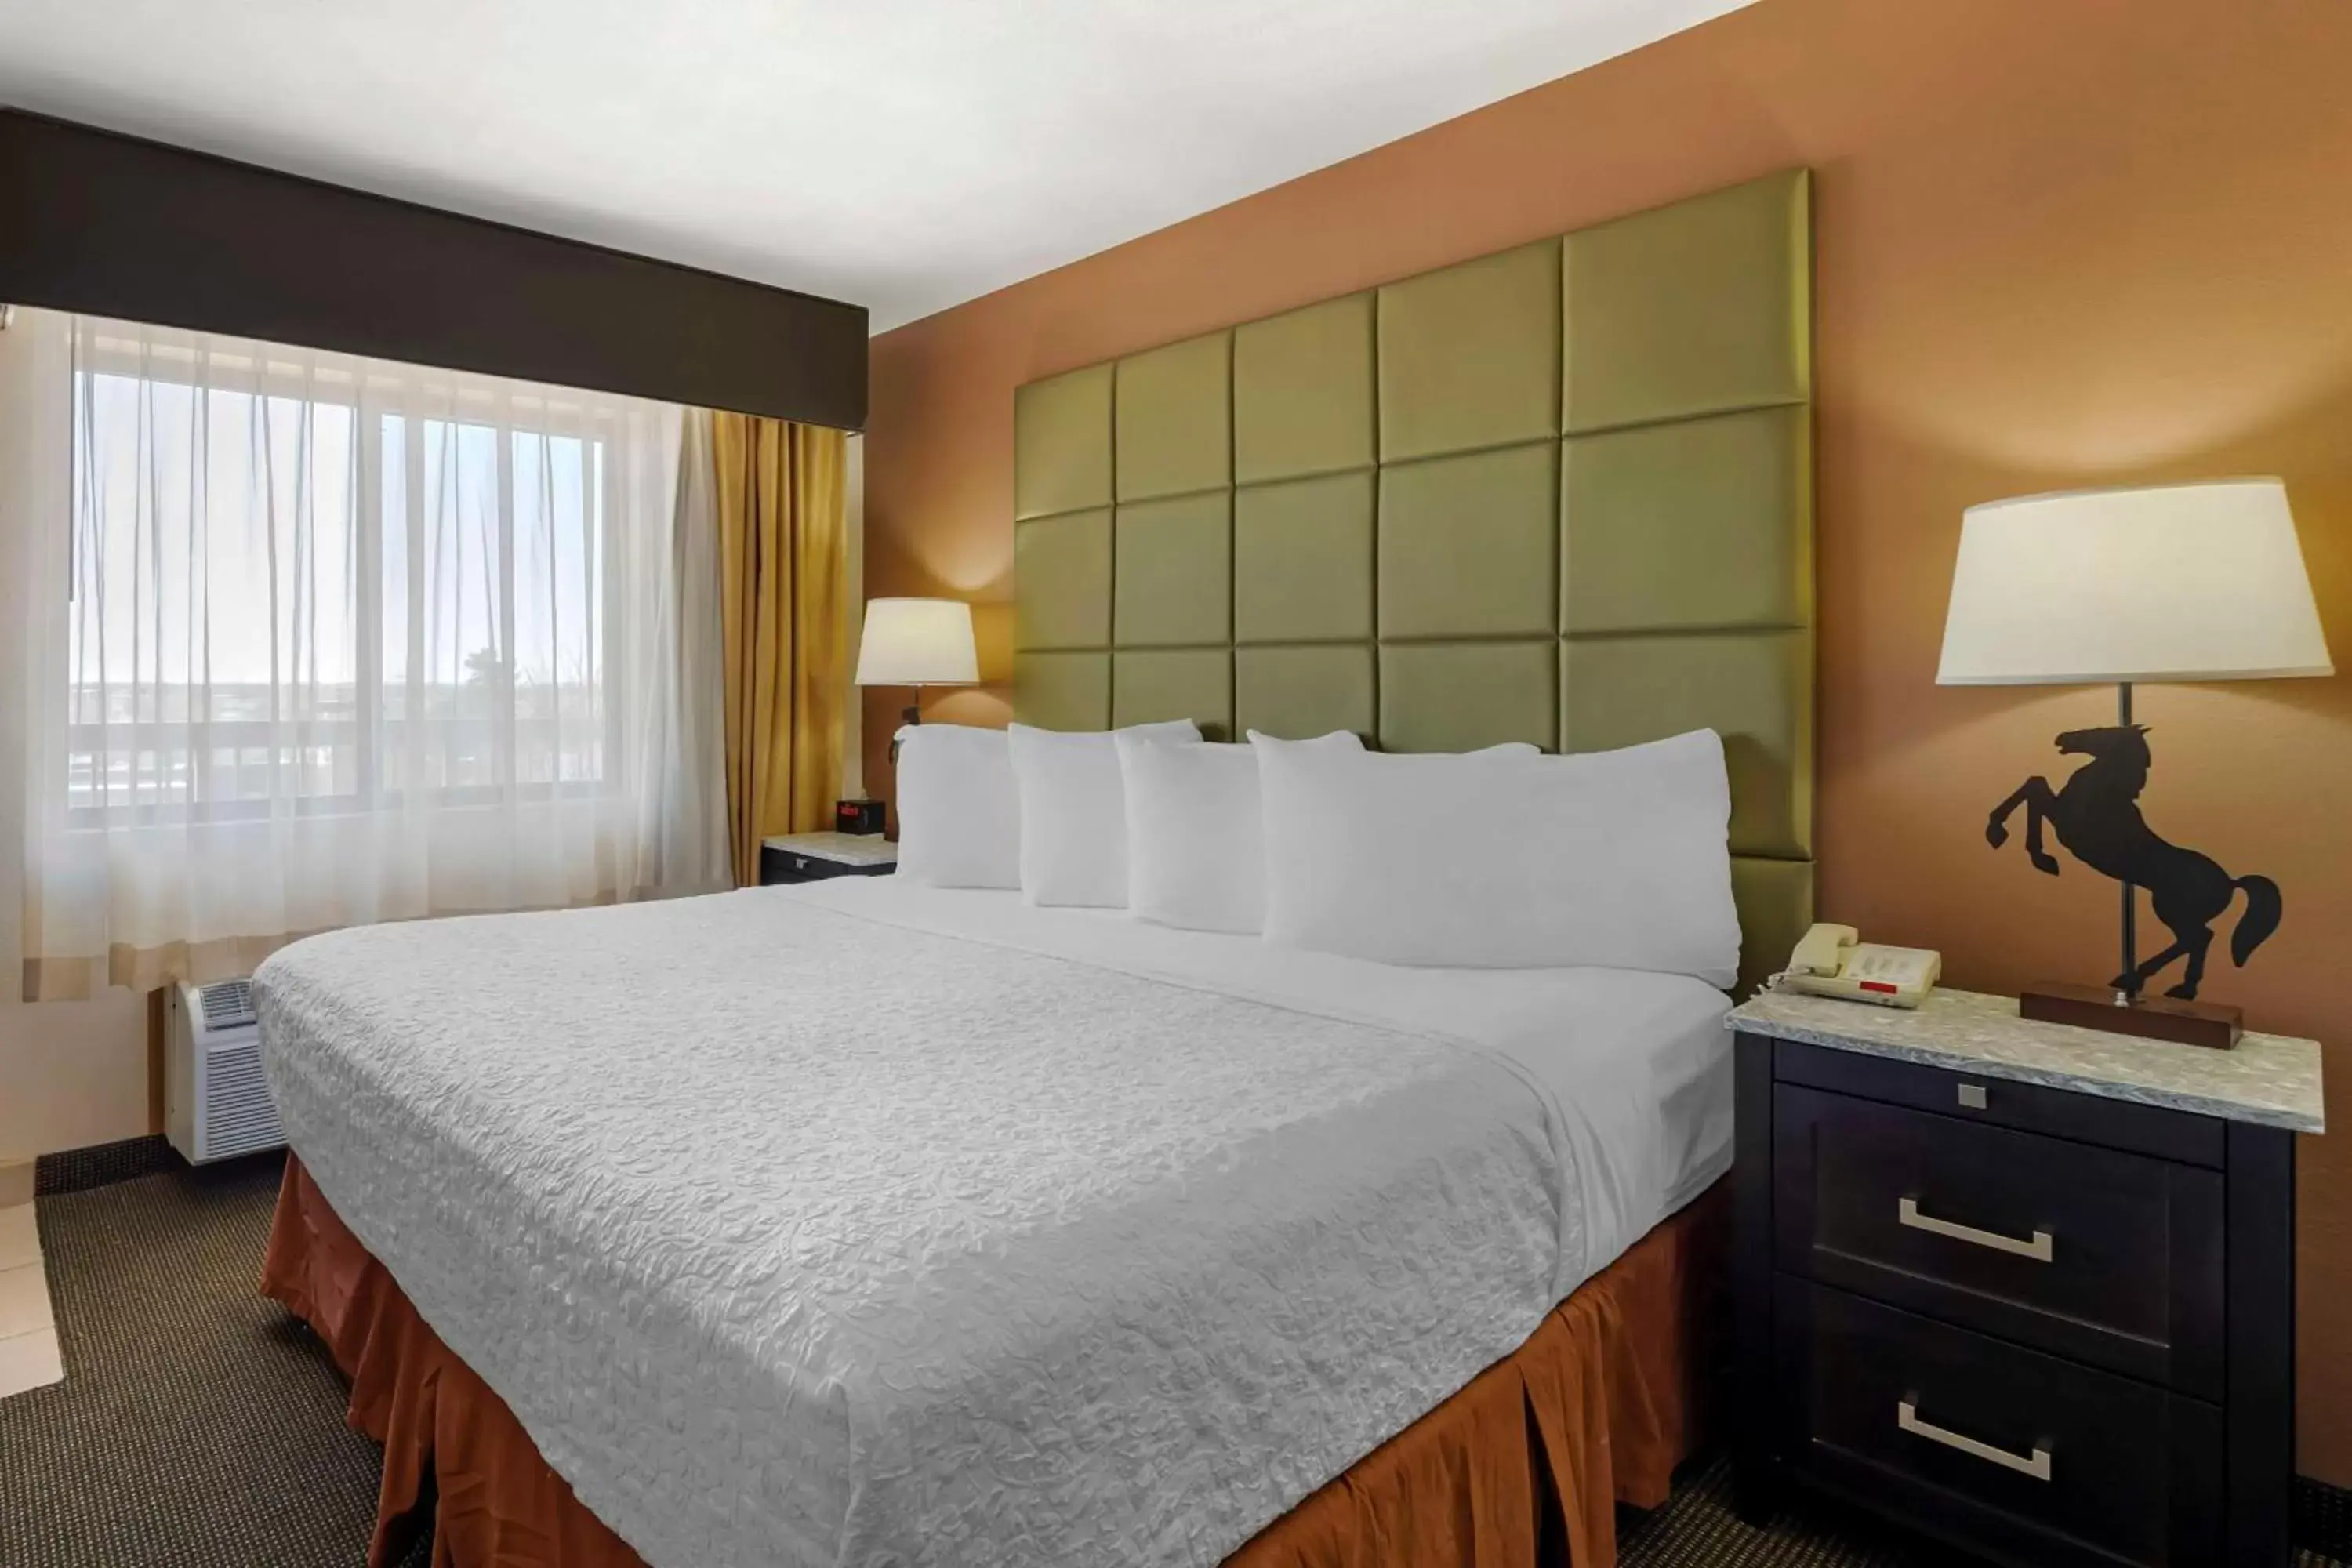 Bedroom, Bed in Best Western Plus Country Inn & Suites